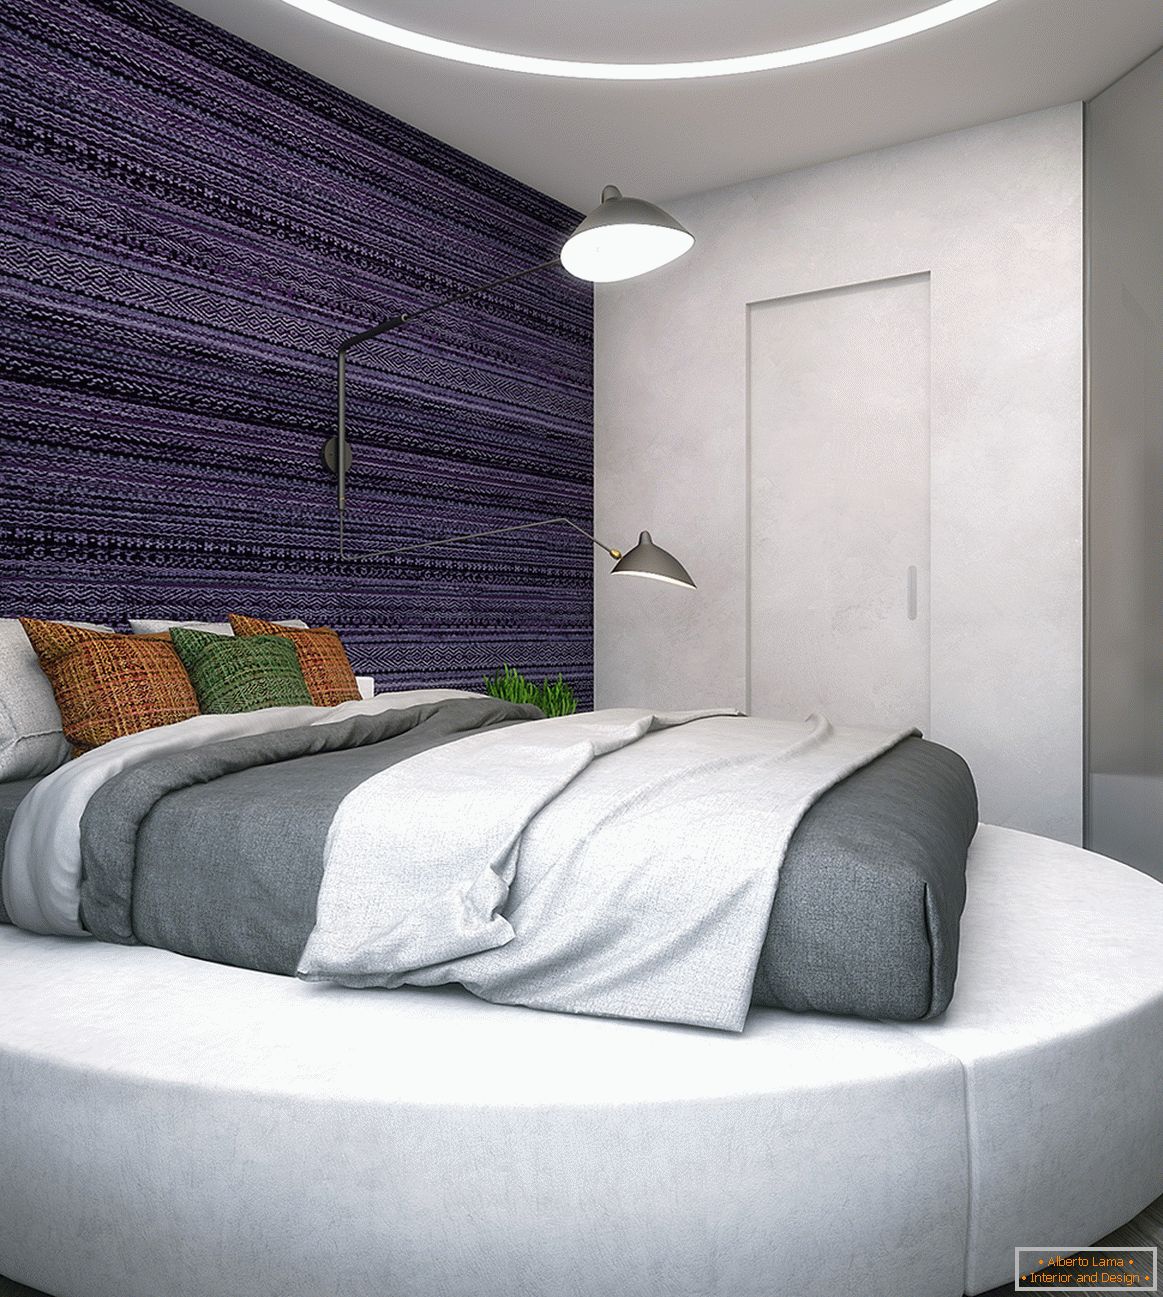 Primjer uređenja interijera male spavaće sobe na fotografiji